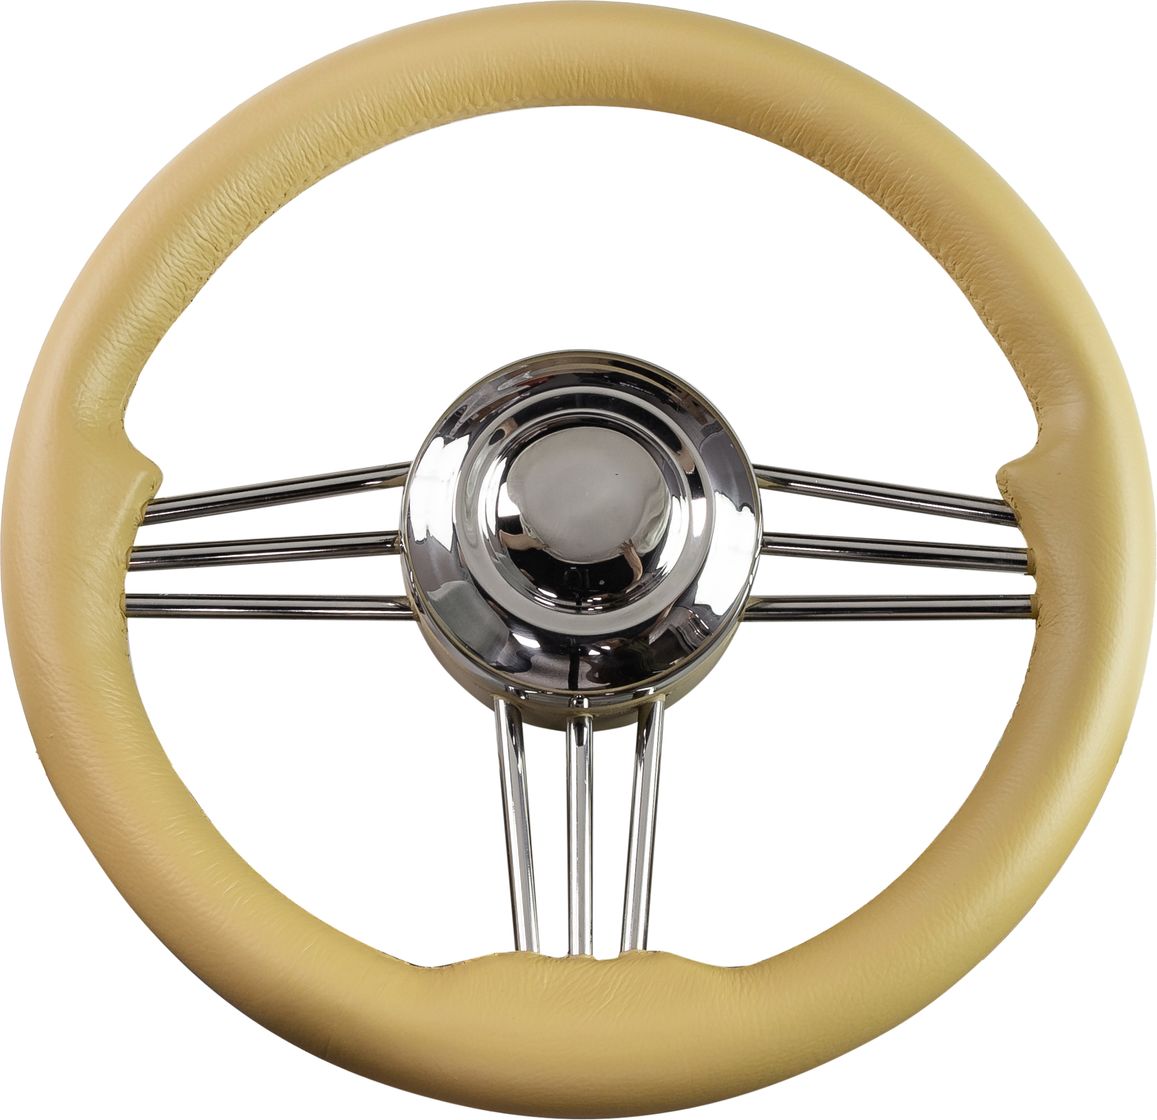 Рулевое колесо Osculati, диаметр 350 мм, цвет кремовый (имитация кожи) 45-173-36 рулевое колесо osculati диаметр 350 мм кремовый имитация кожи 45 173 36